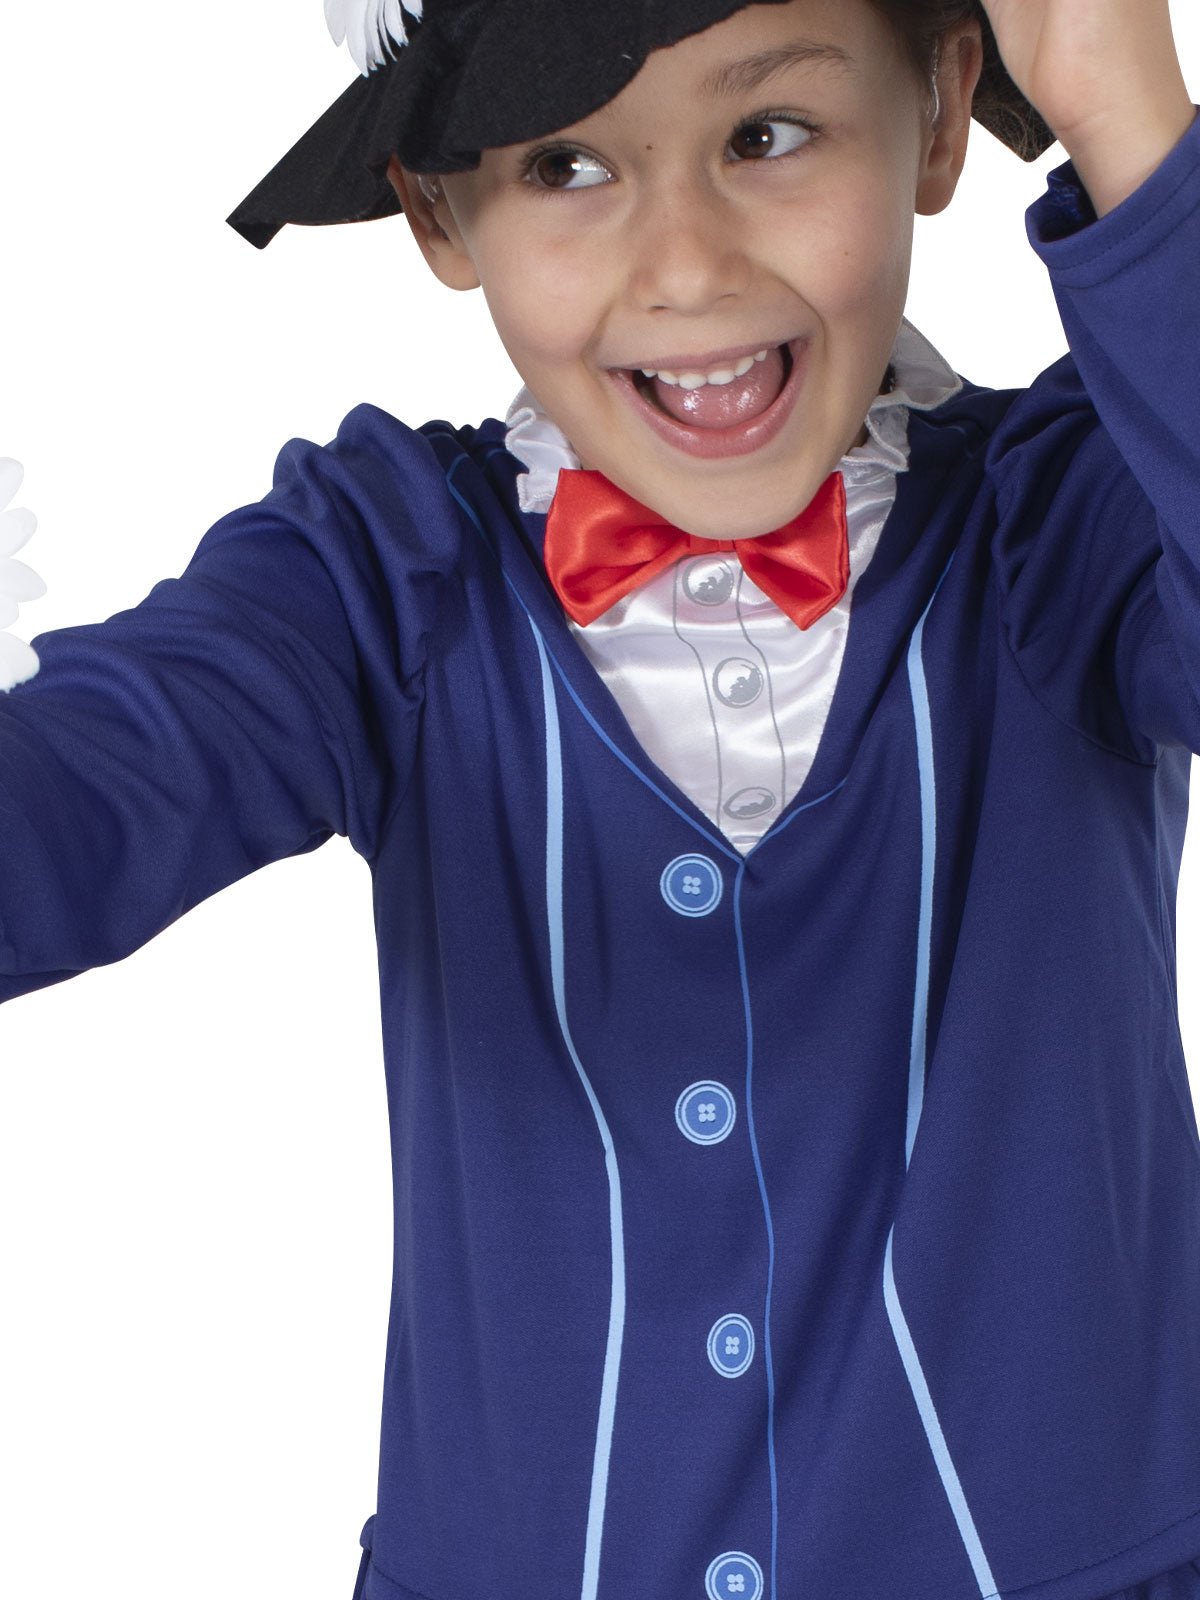 Mary Poppins Costume For Kids - Kids Mega Mart